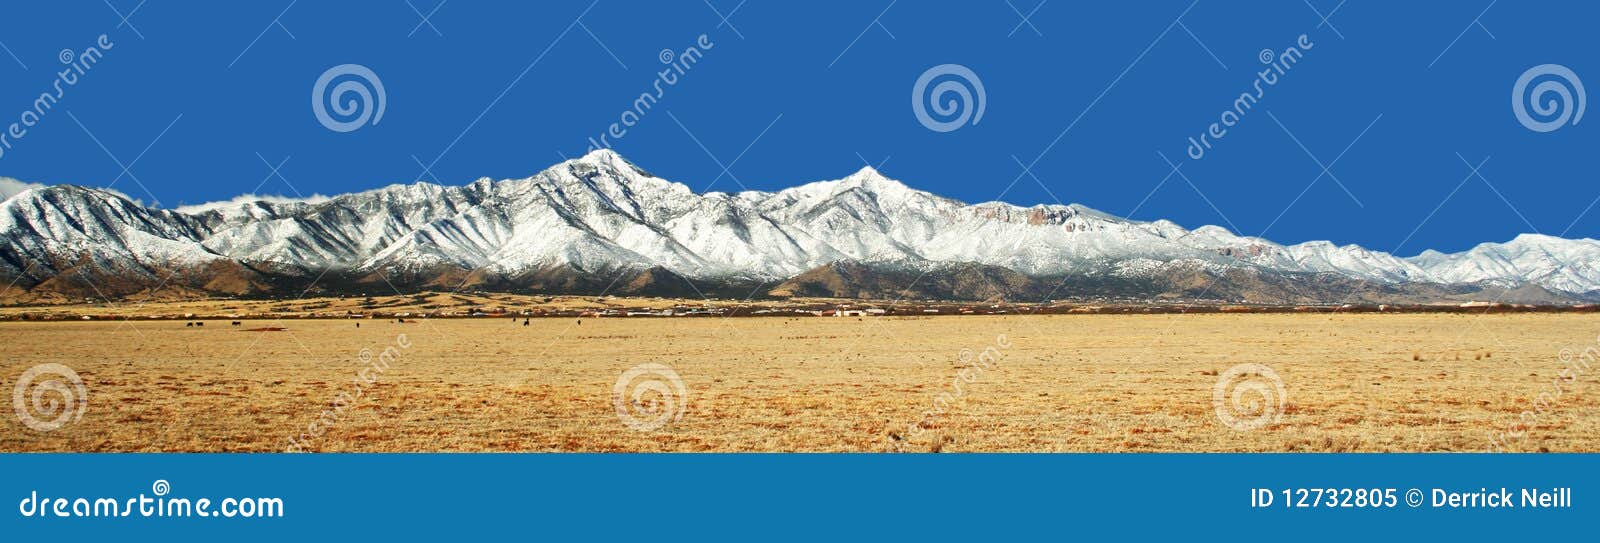 the huachuca mountains in winter in arizona